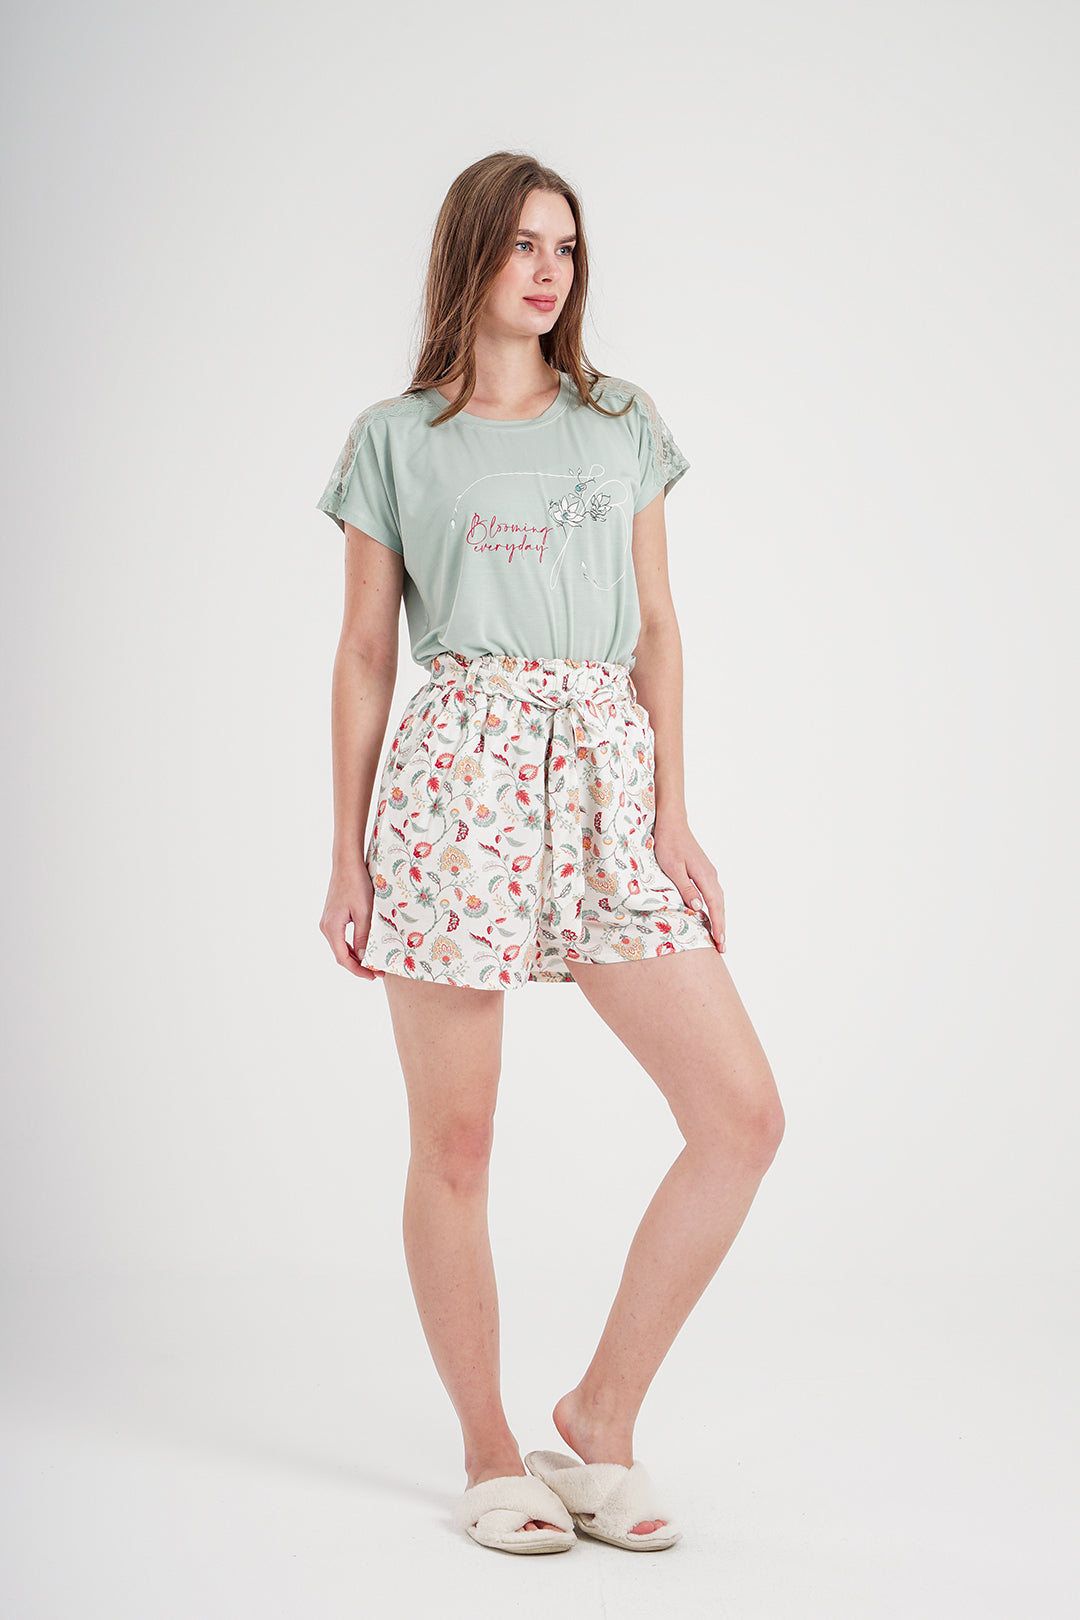 Blooming Everyday Women's Printed Viscose Shorts Pajamas